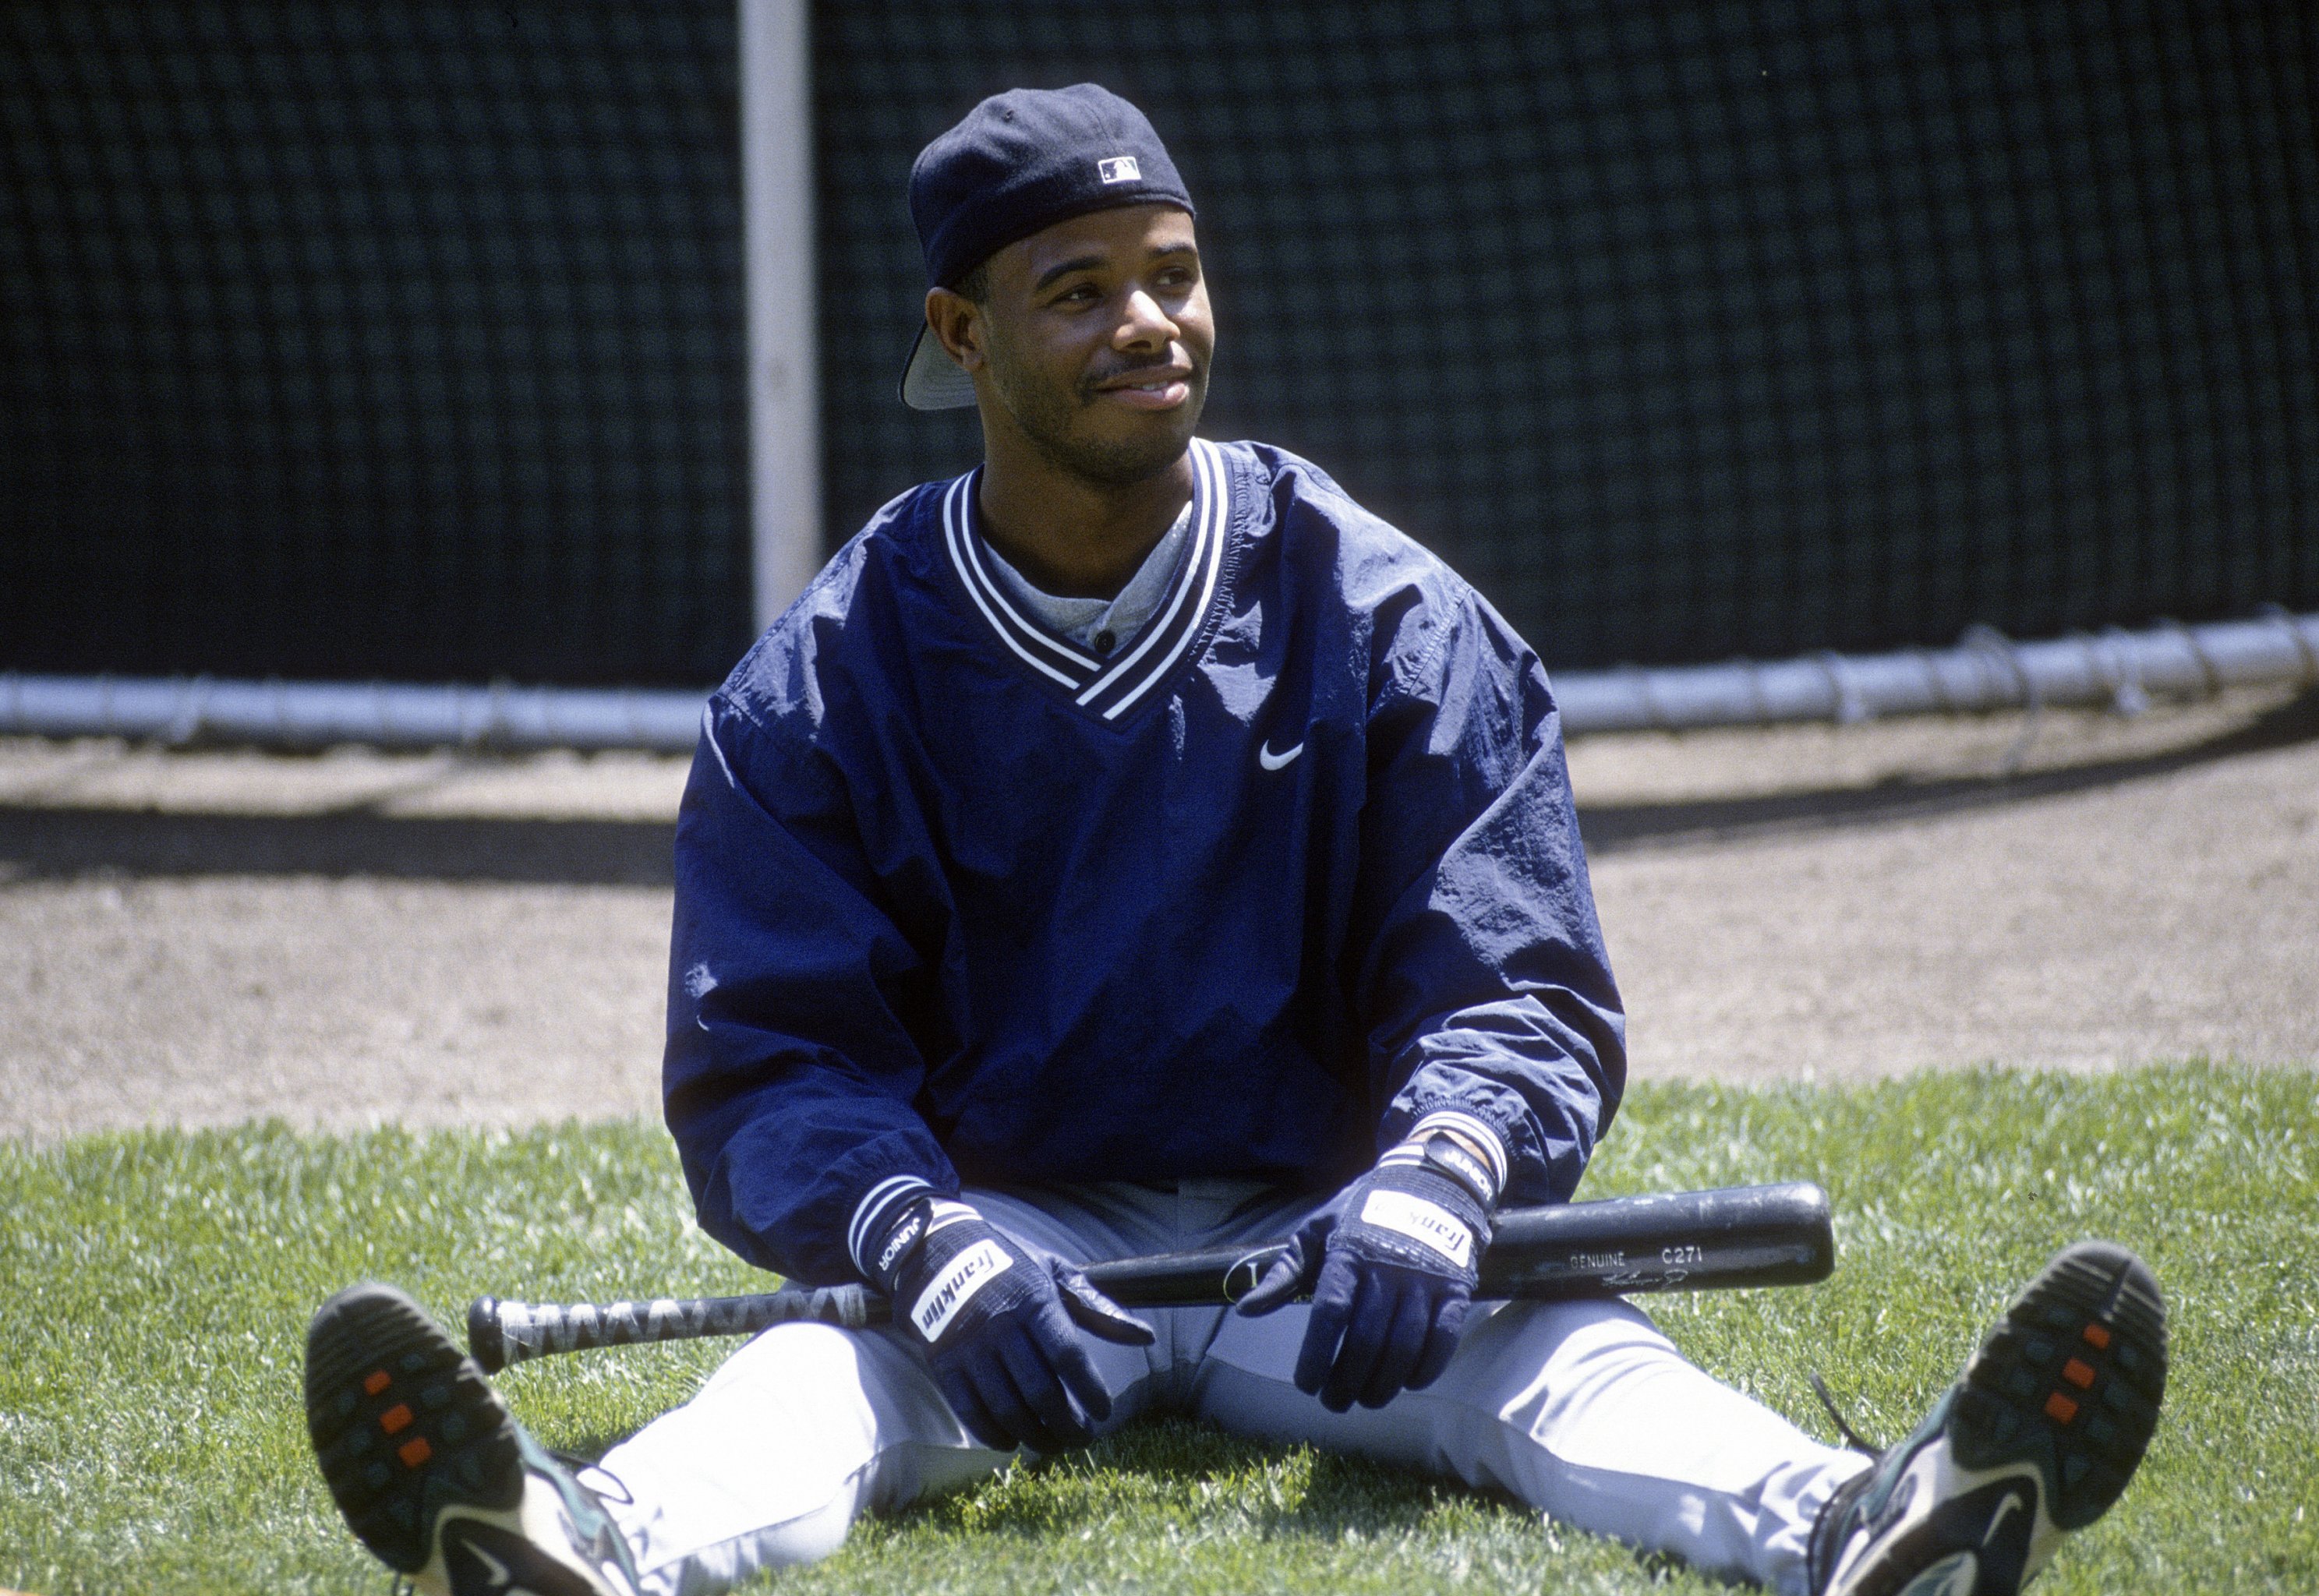 Ken Griffey Jr was Mr. Baseball in the '90s